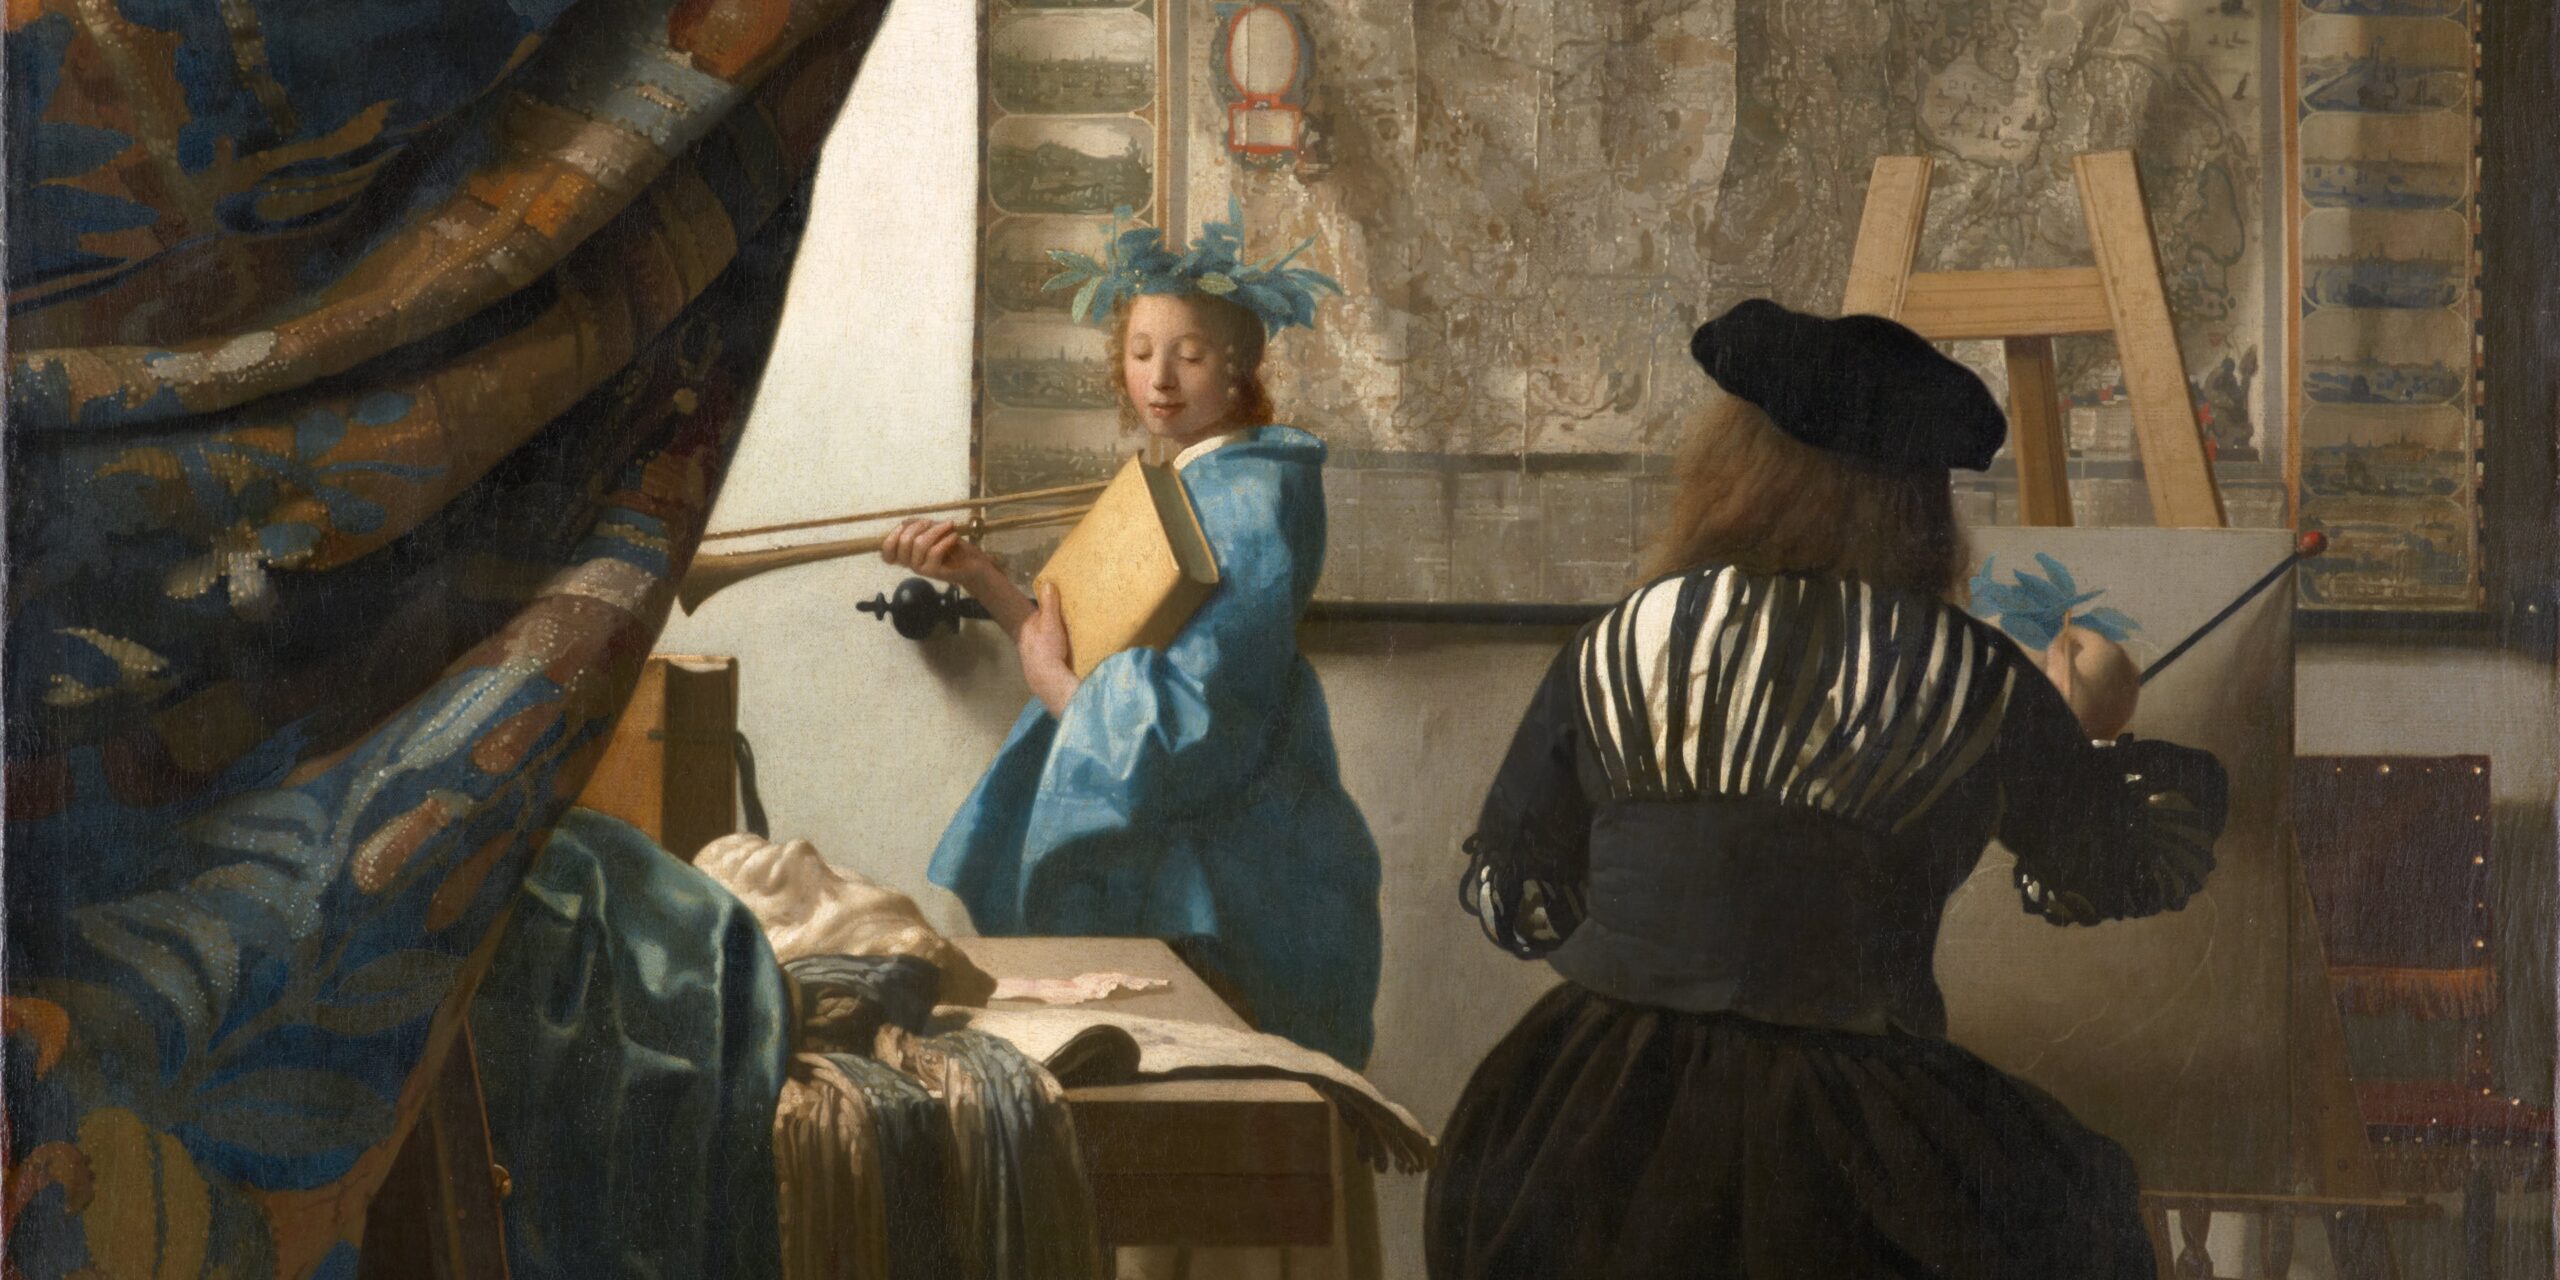 Dettaglio tratto dal dipinto "Allegoria della pittura" di Jan Vermeer